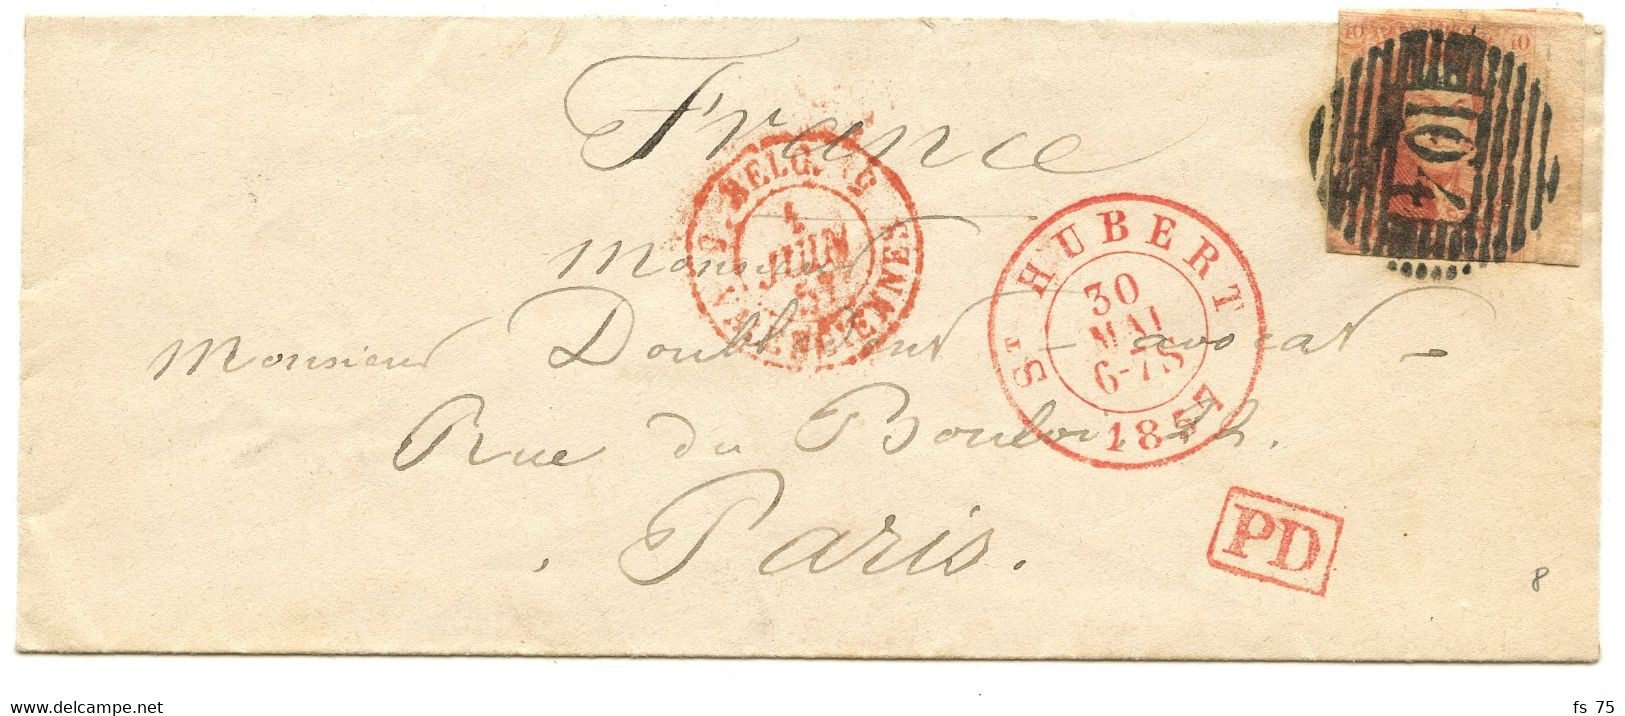 BELGIQUE -  MEDAILLON N°8 (LD) P104 ST HUBERT SUR LETTRE SANS CORRESPONDANCE POUR PARIS, 1857 - 1851-1857 Medallions (6/8)